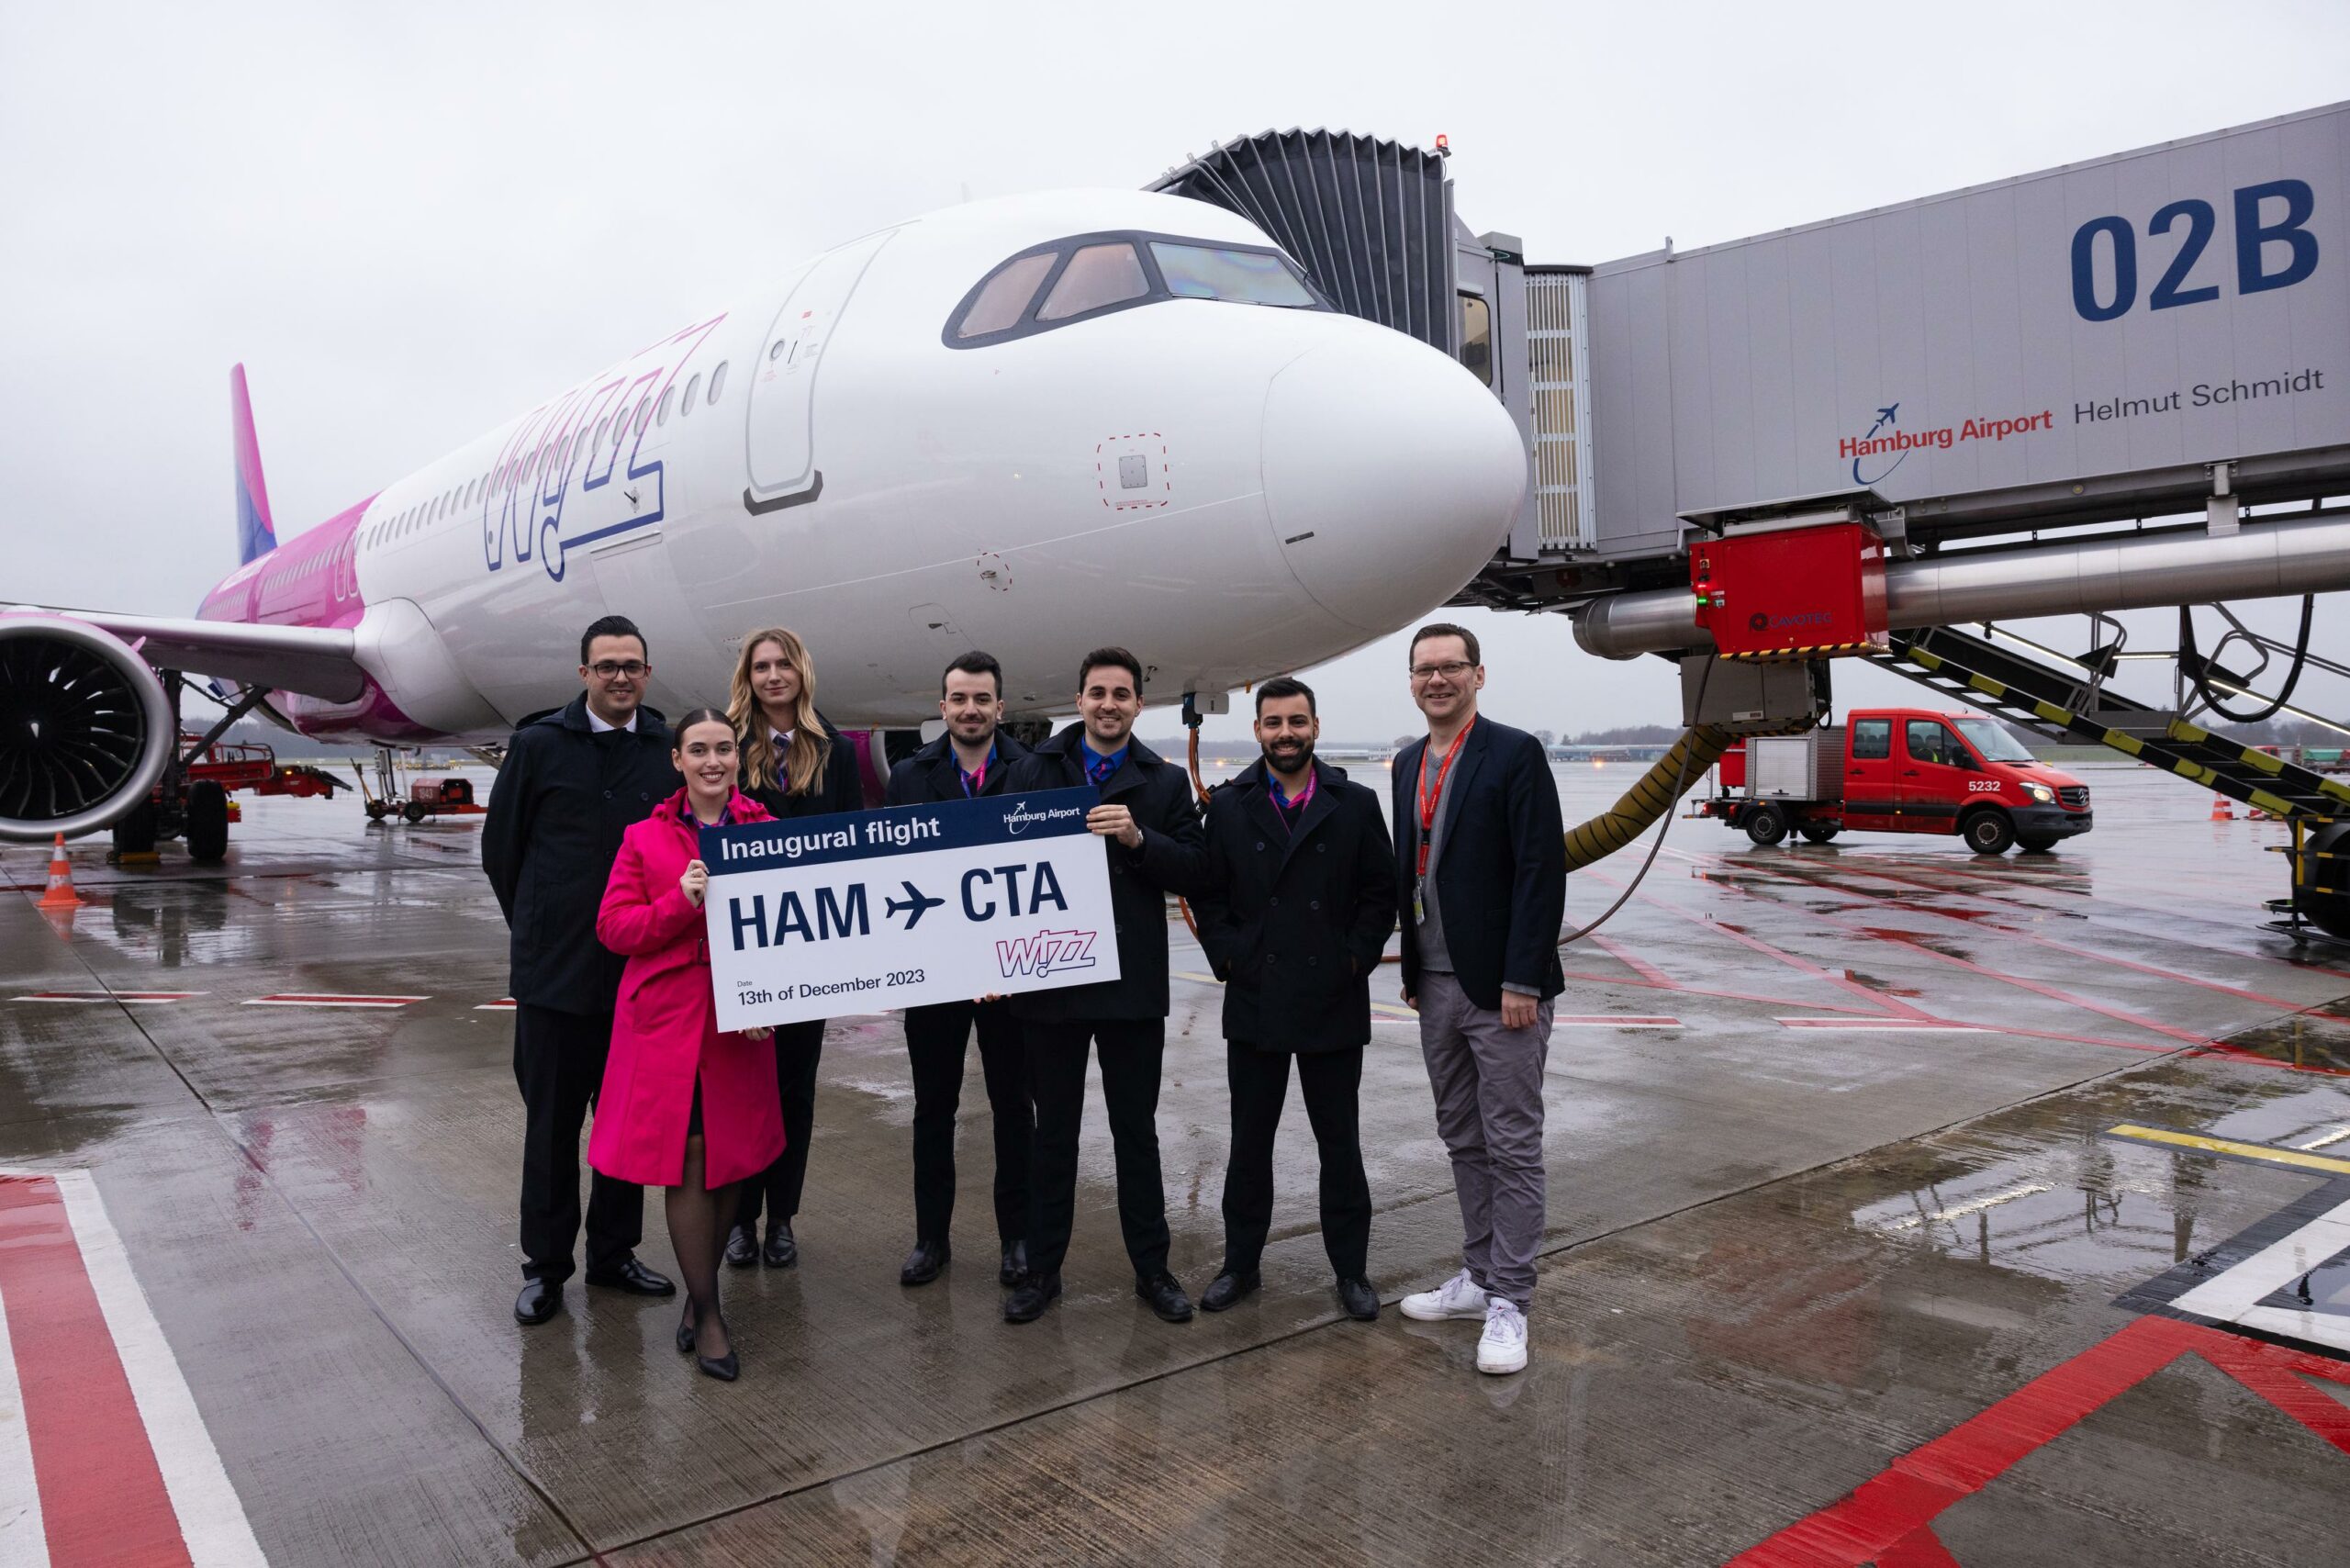 Aufnahme der Crew vor dem Flugzeug von „Wizz Air“, mit dem der Erstflug durchgeführt wurde.